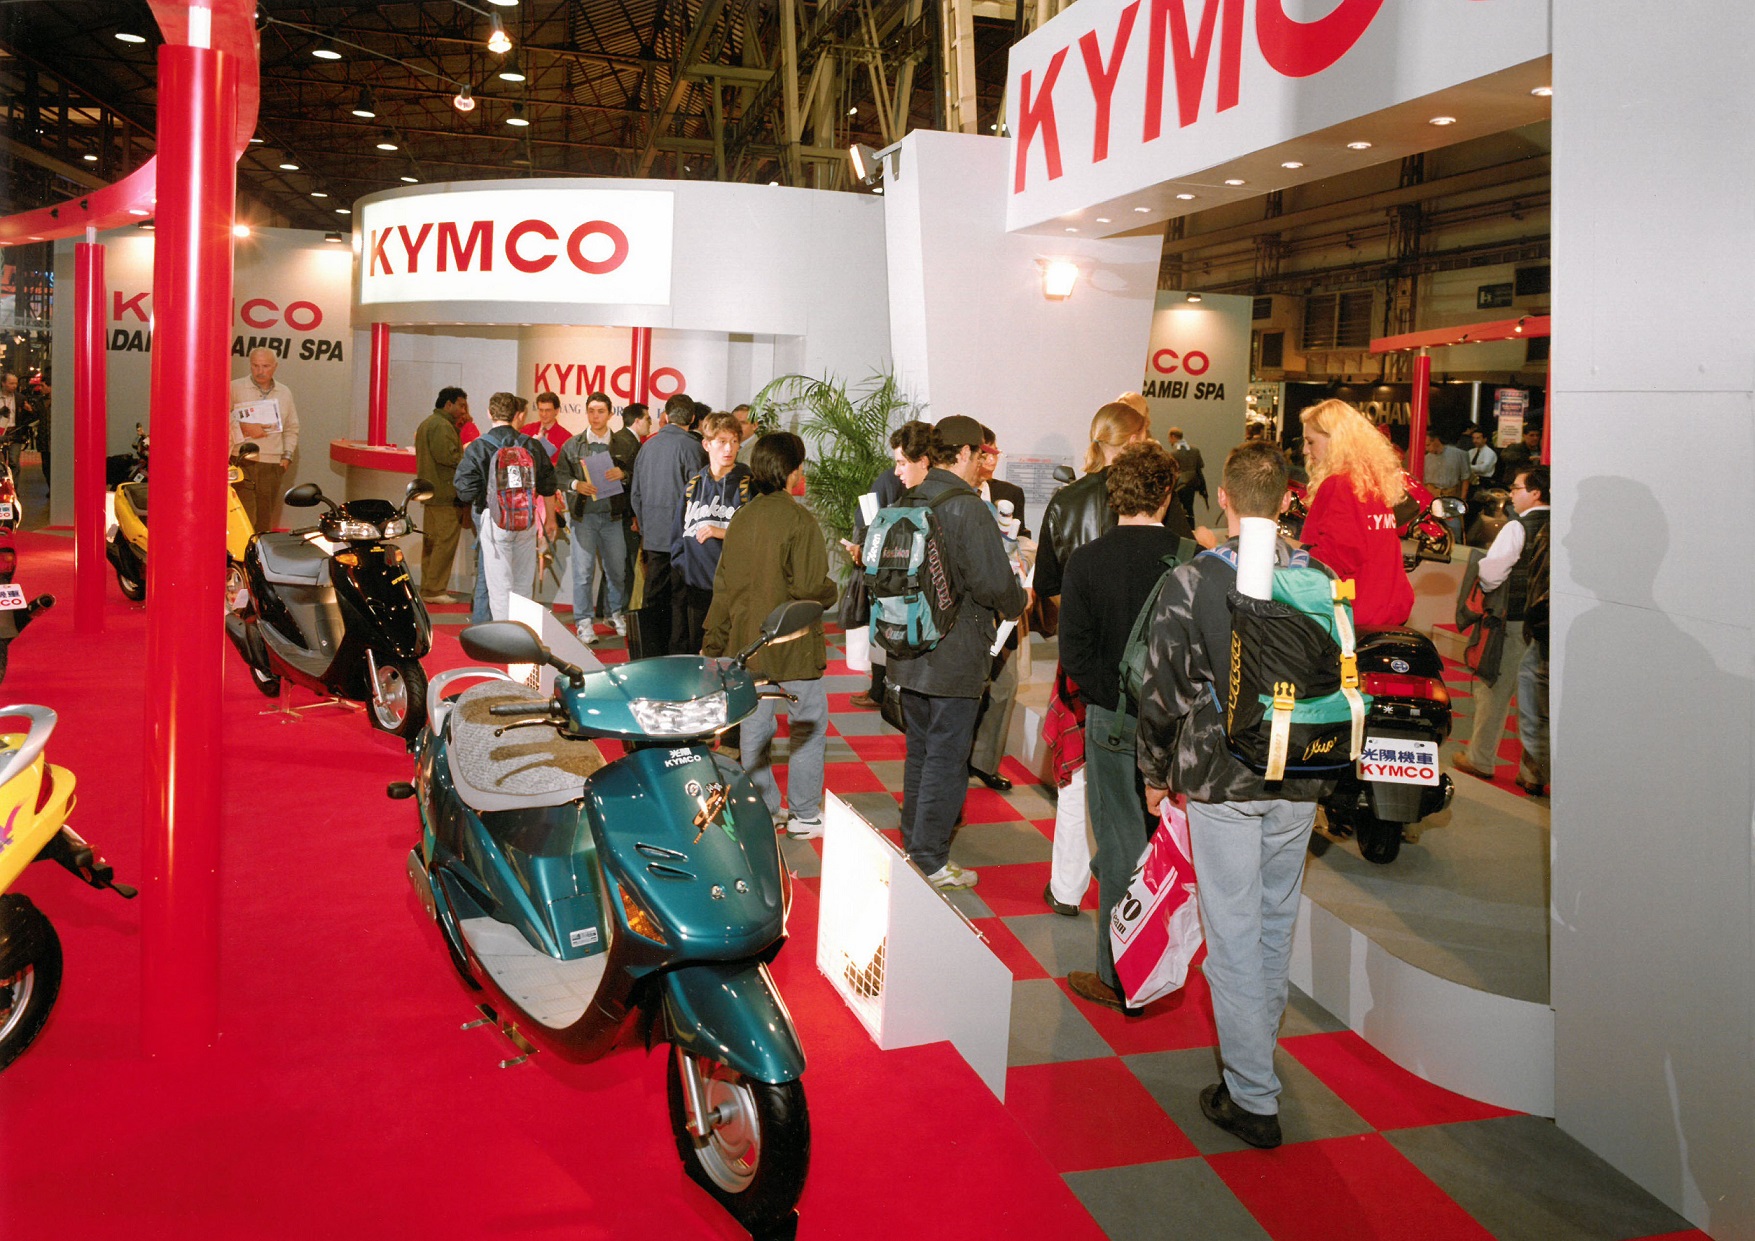 1993 年官方正式參展的攤位實景圖。1992 年，光陽與本田正式結束合作關係，改用自創的「KYMCO」品牌行銷國際迄今達108國，全球累計銷售超過千萬台 Kymco 機車。